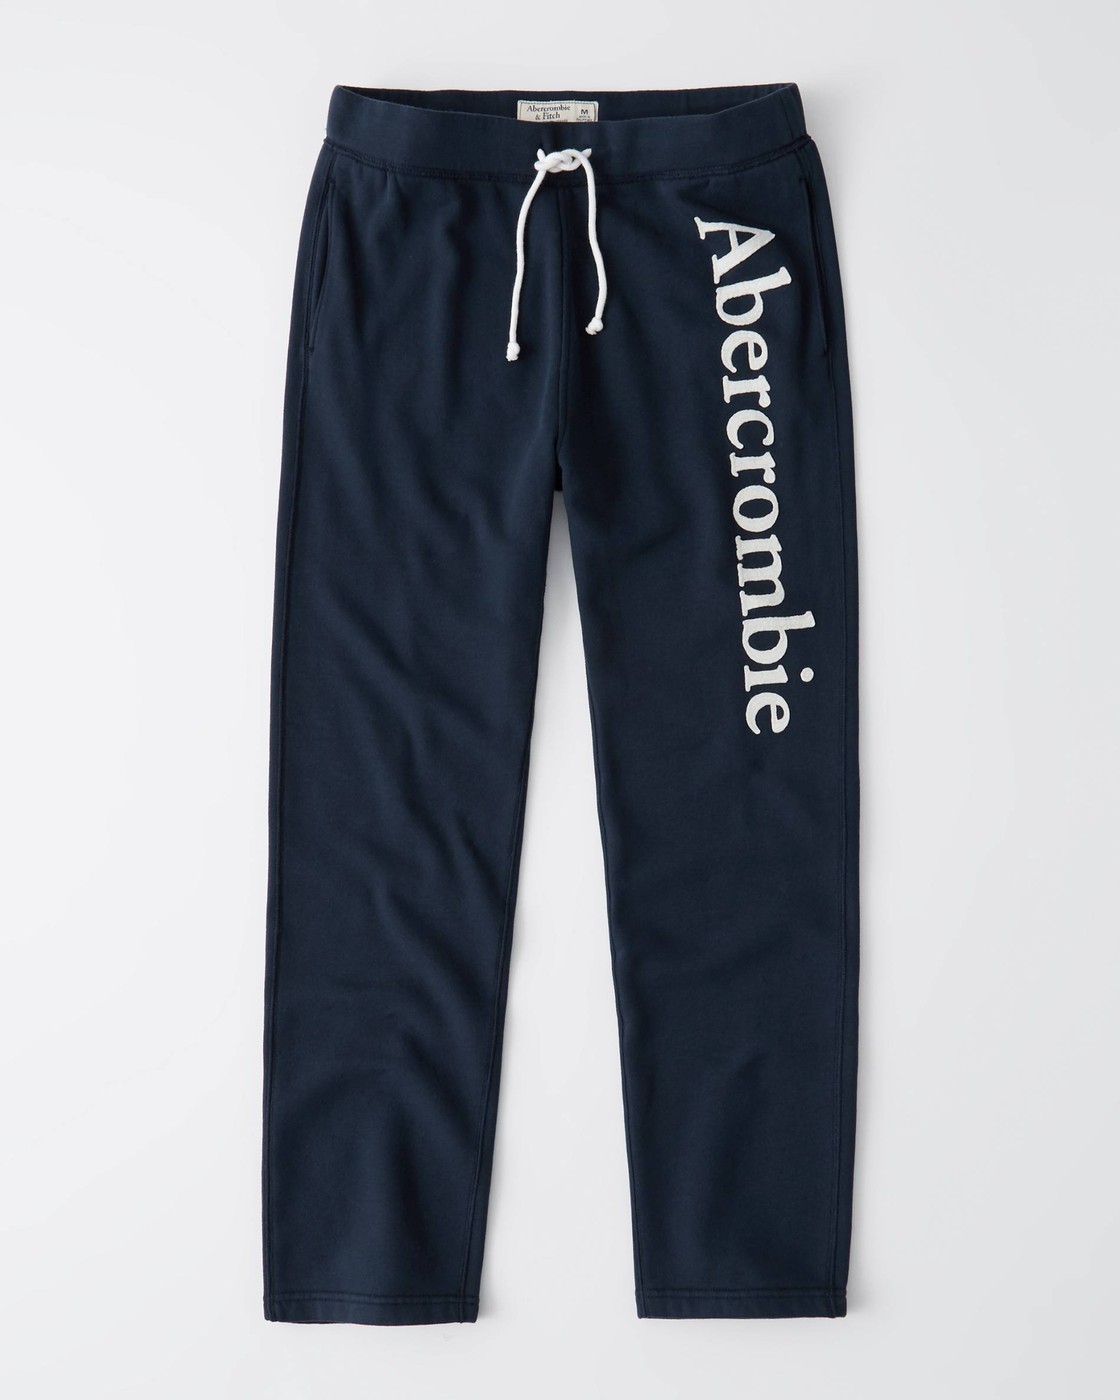 Спортивные штаны Abercrombie & Fitch, M, M